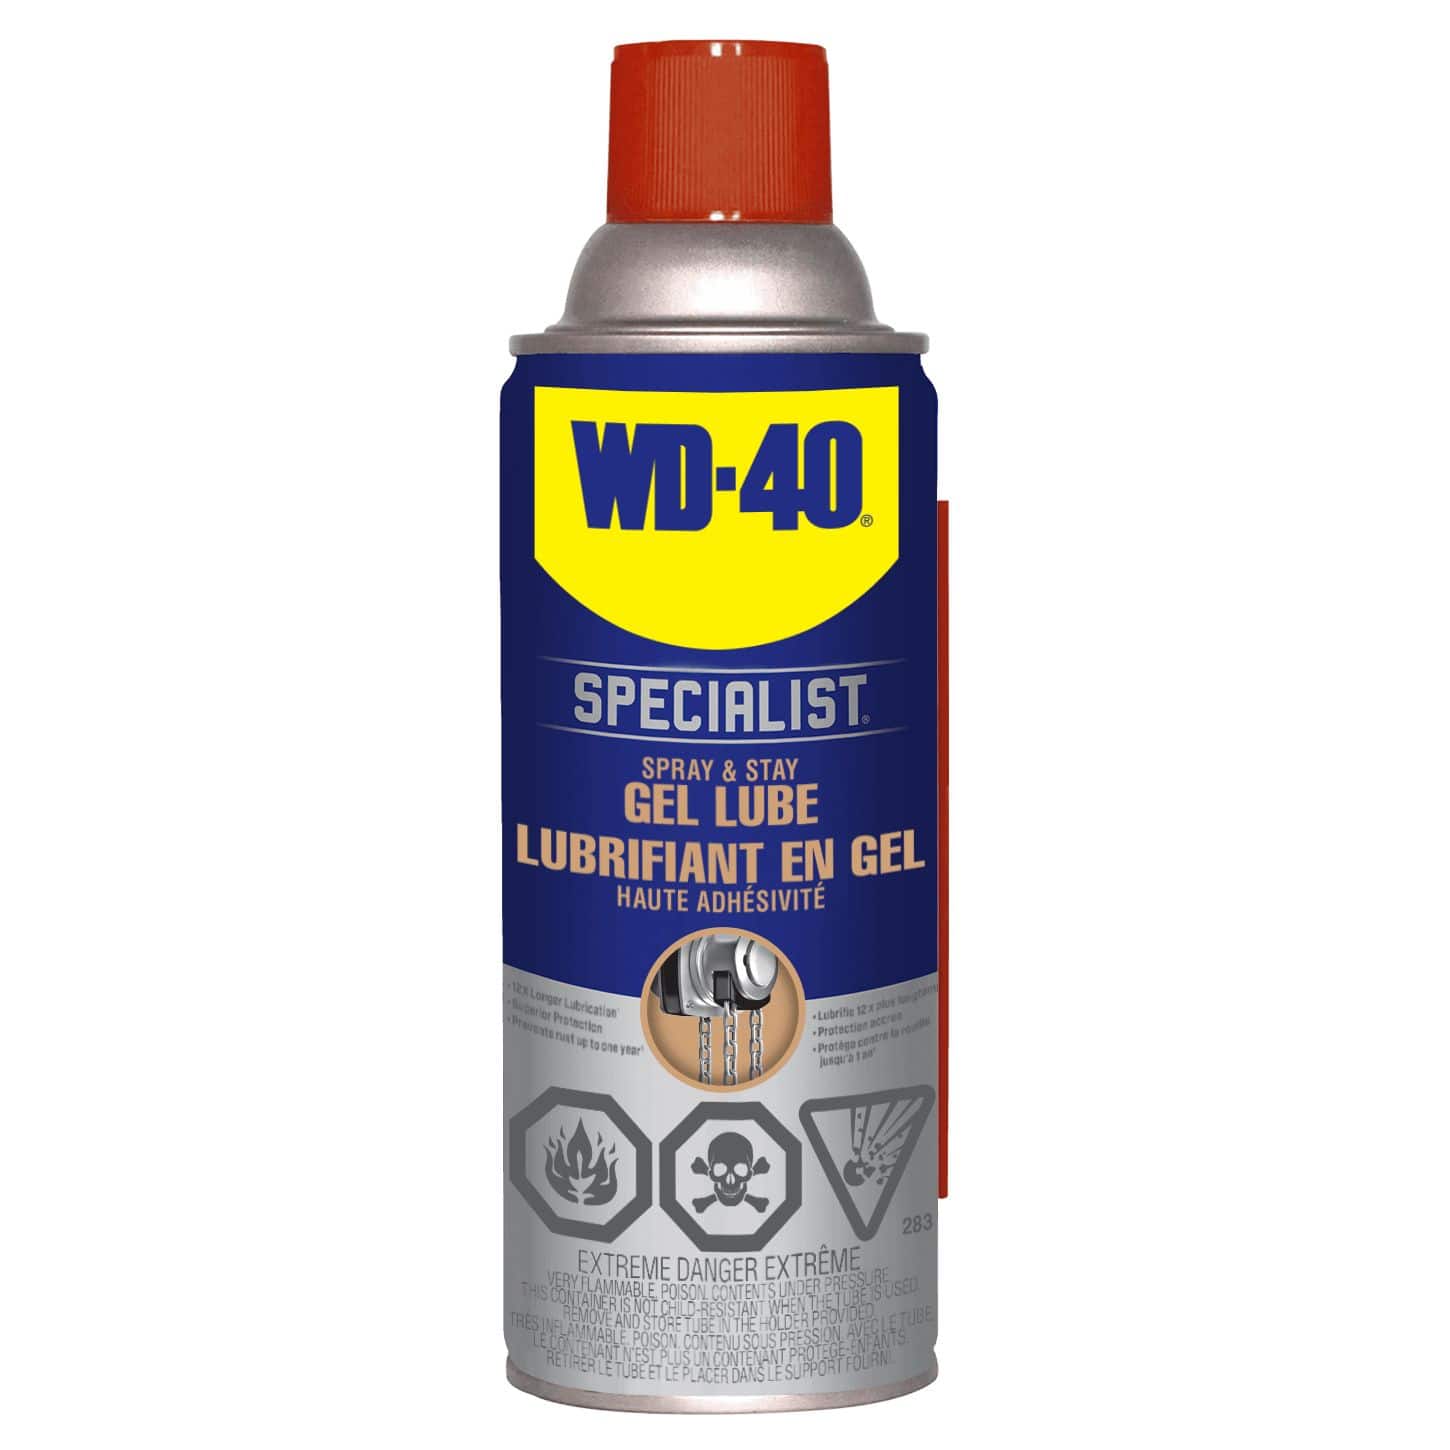 Wd 40 Specialist Spray And Stay Gel Lubricant No Drip Formula 283 G